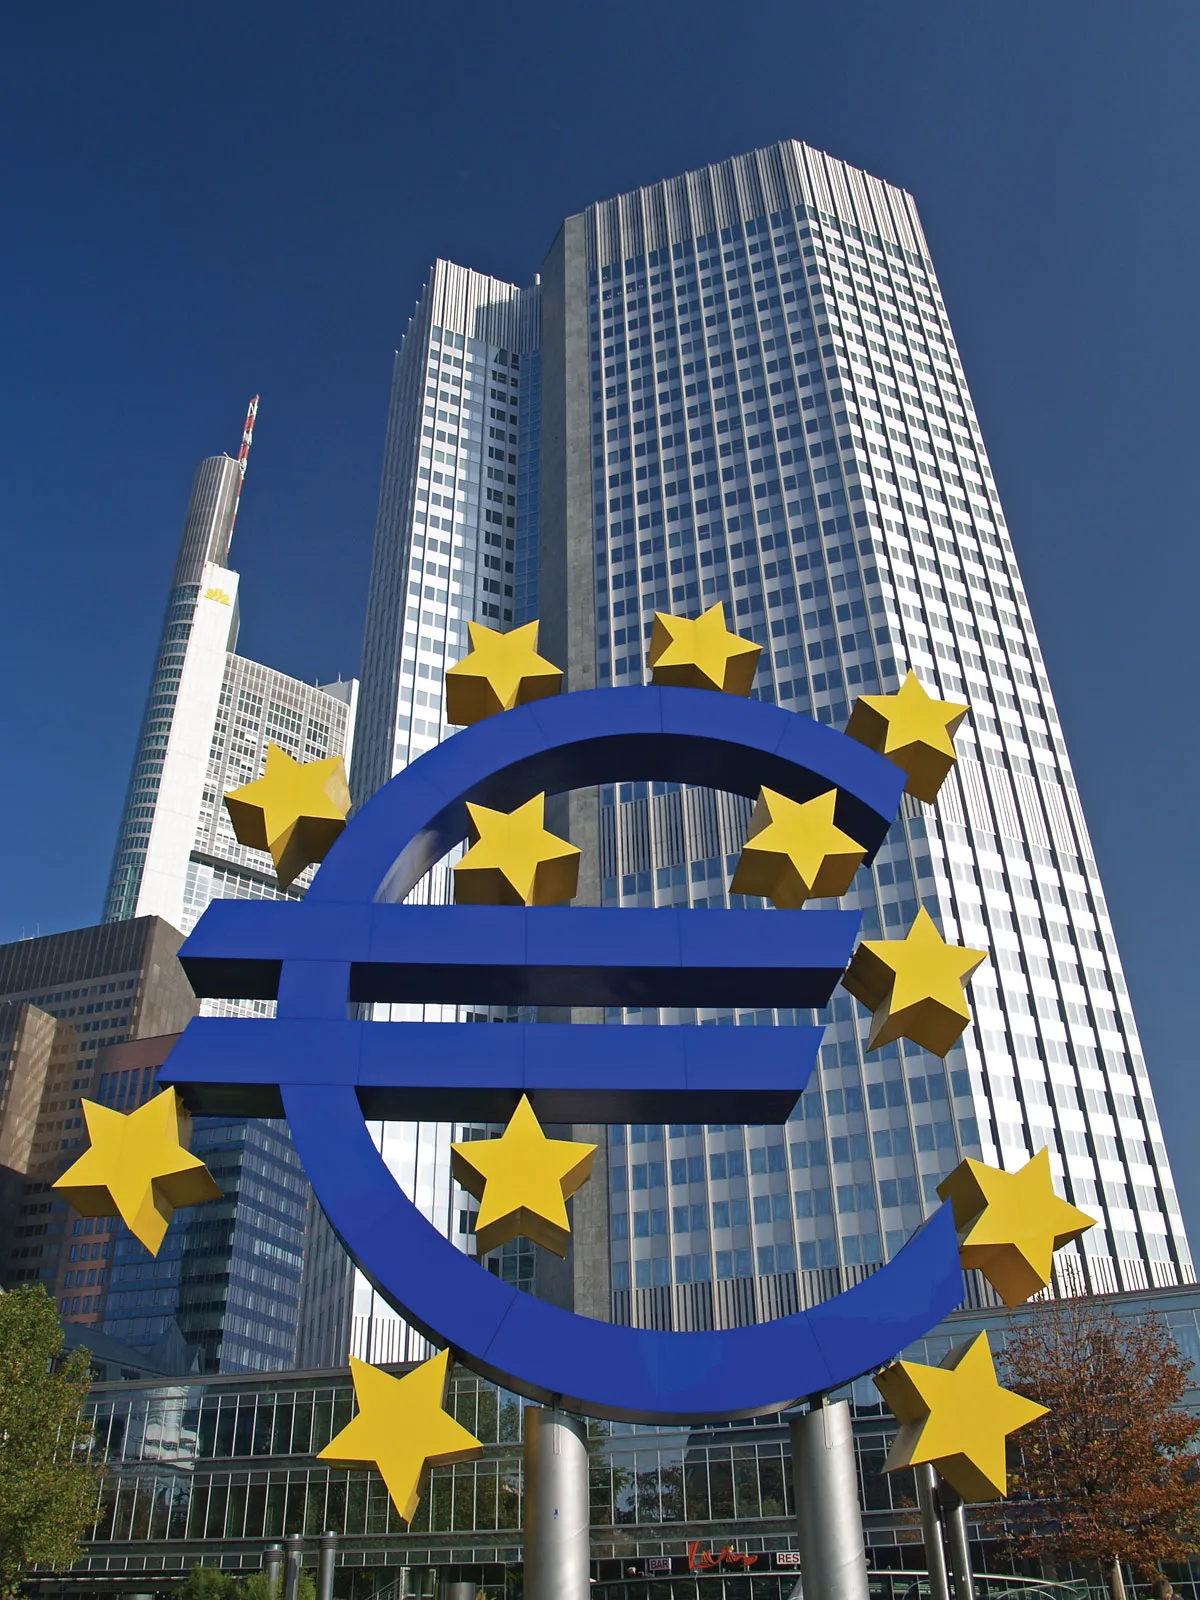 European Central Bank (ECB) - Eurozone
